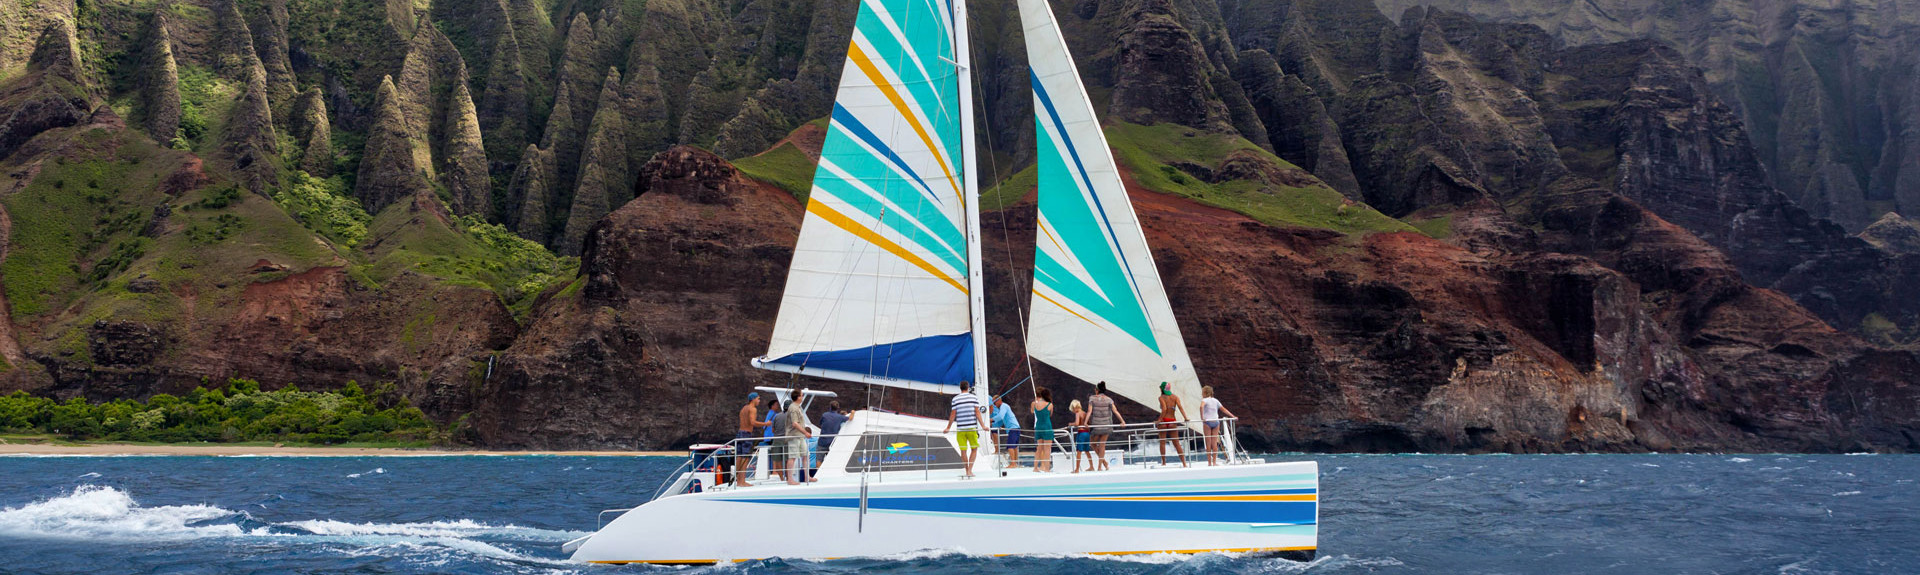 kauai sailboat tours